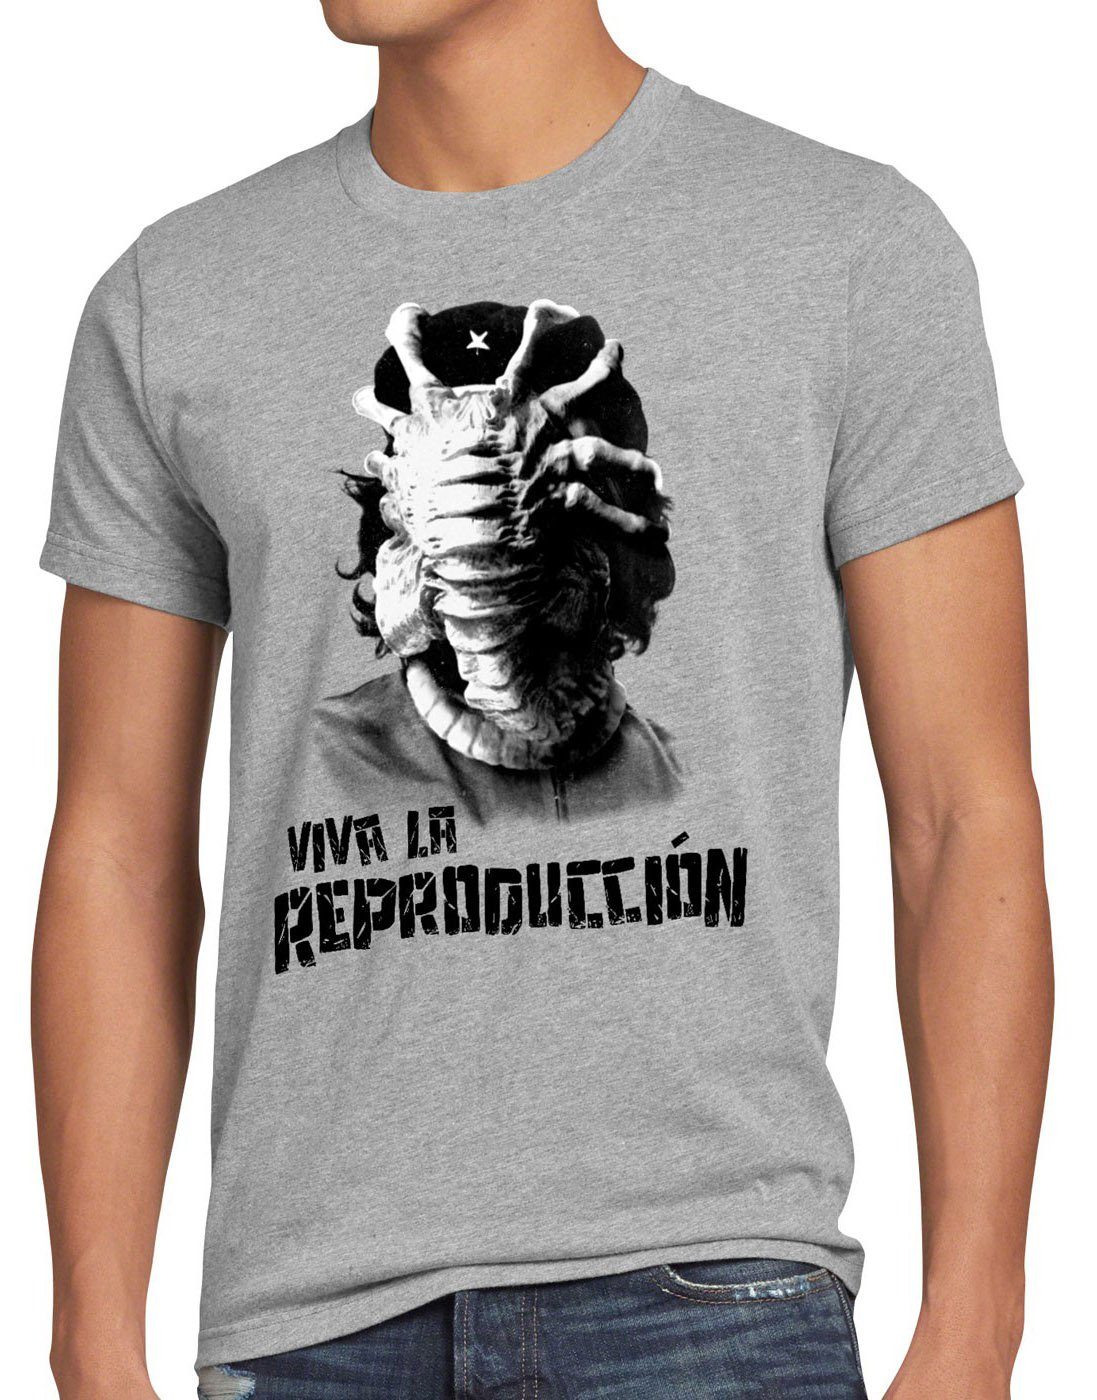 style3 Print-Shirt grau che guevara kino revolution kuba Herren meliert alien Viva Facehugger xenomorph T-Shirt